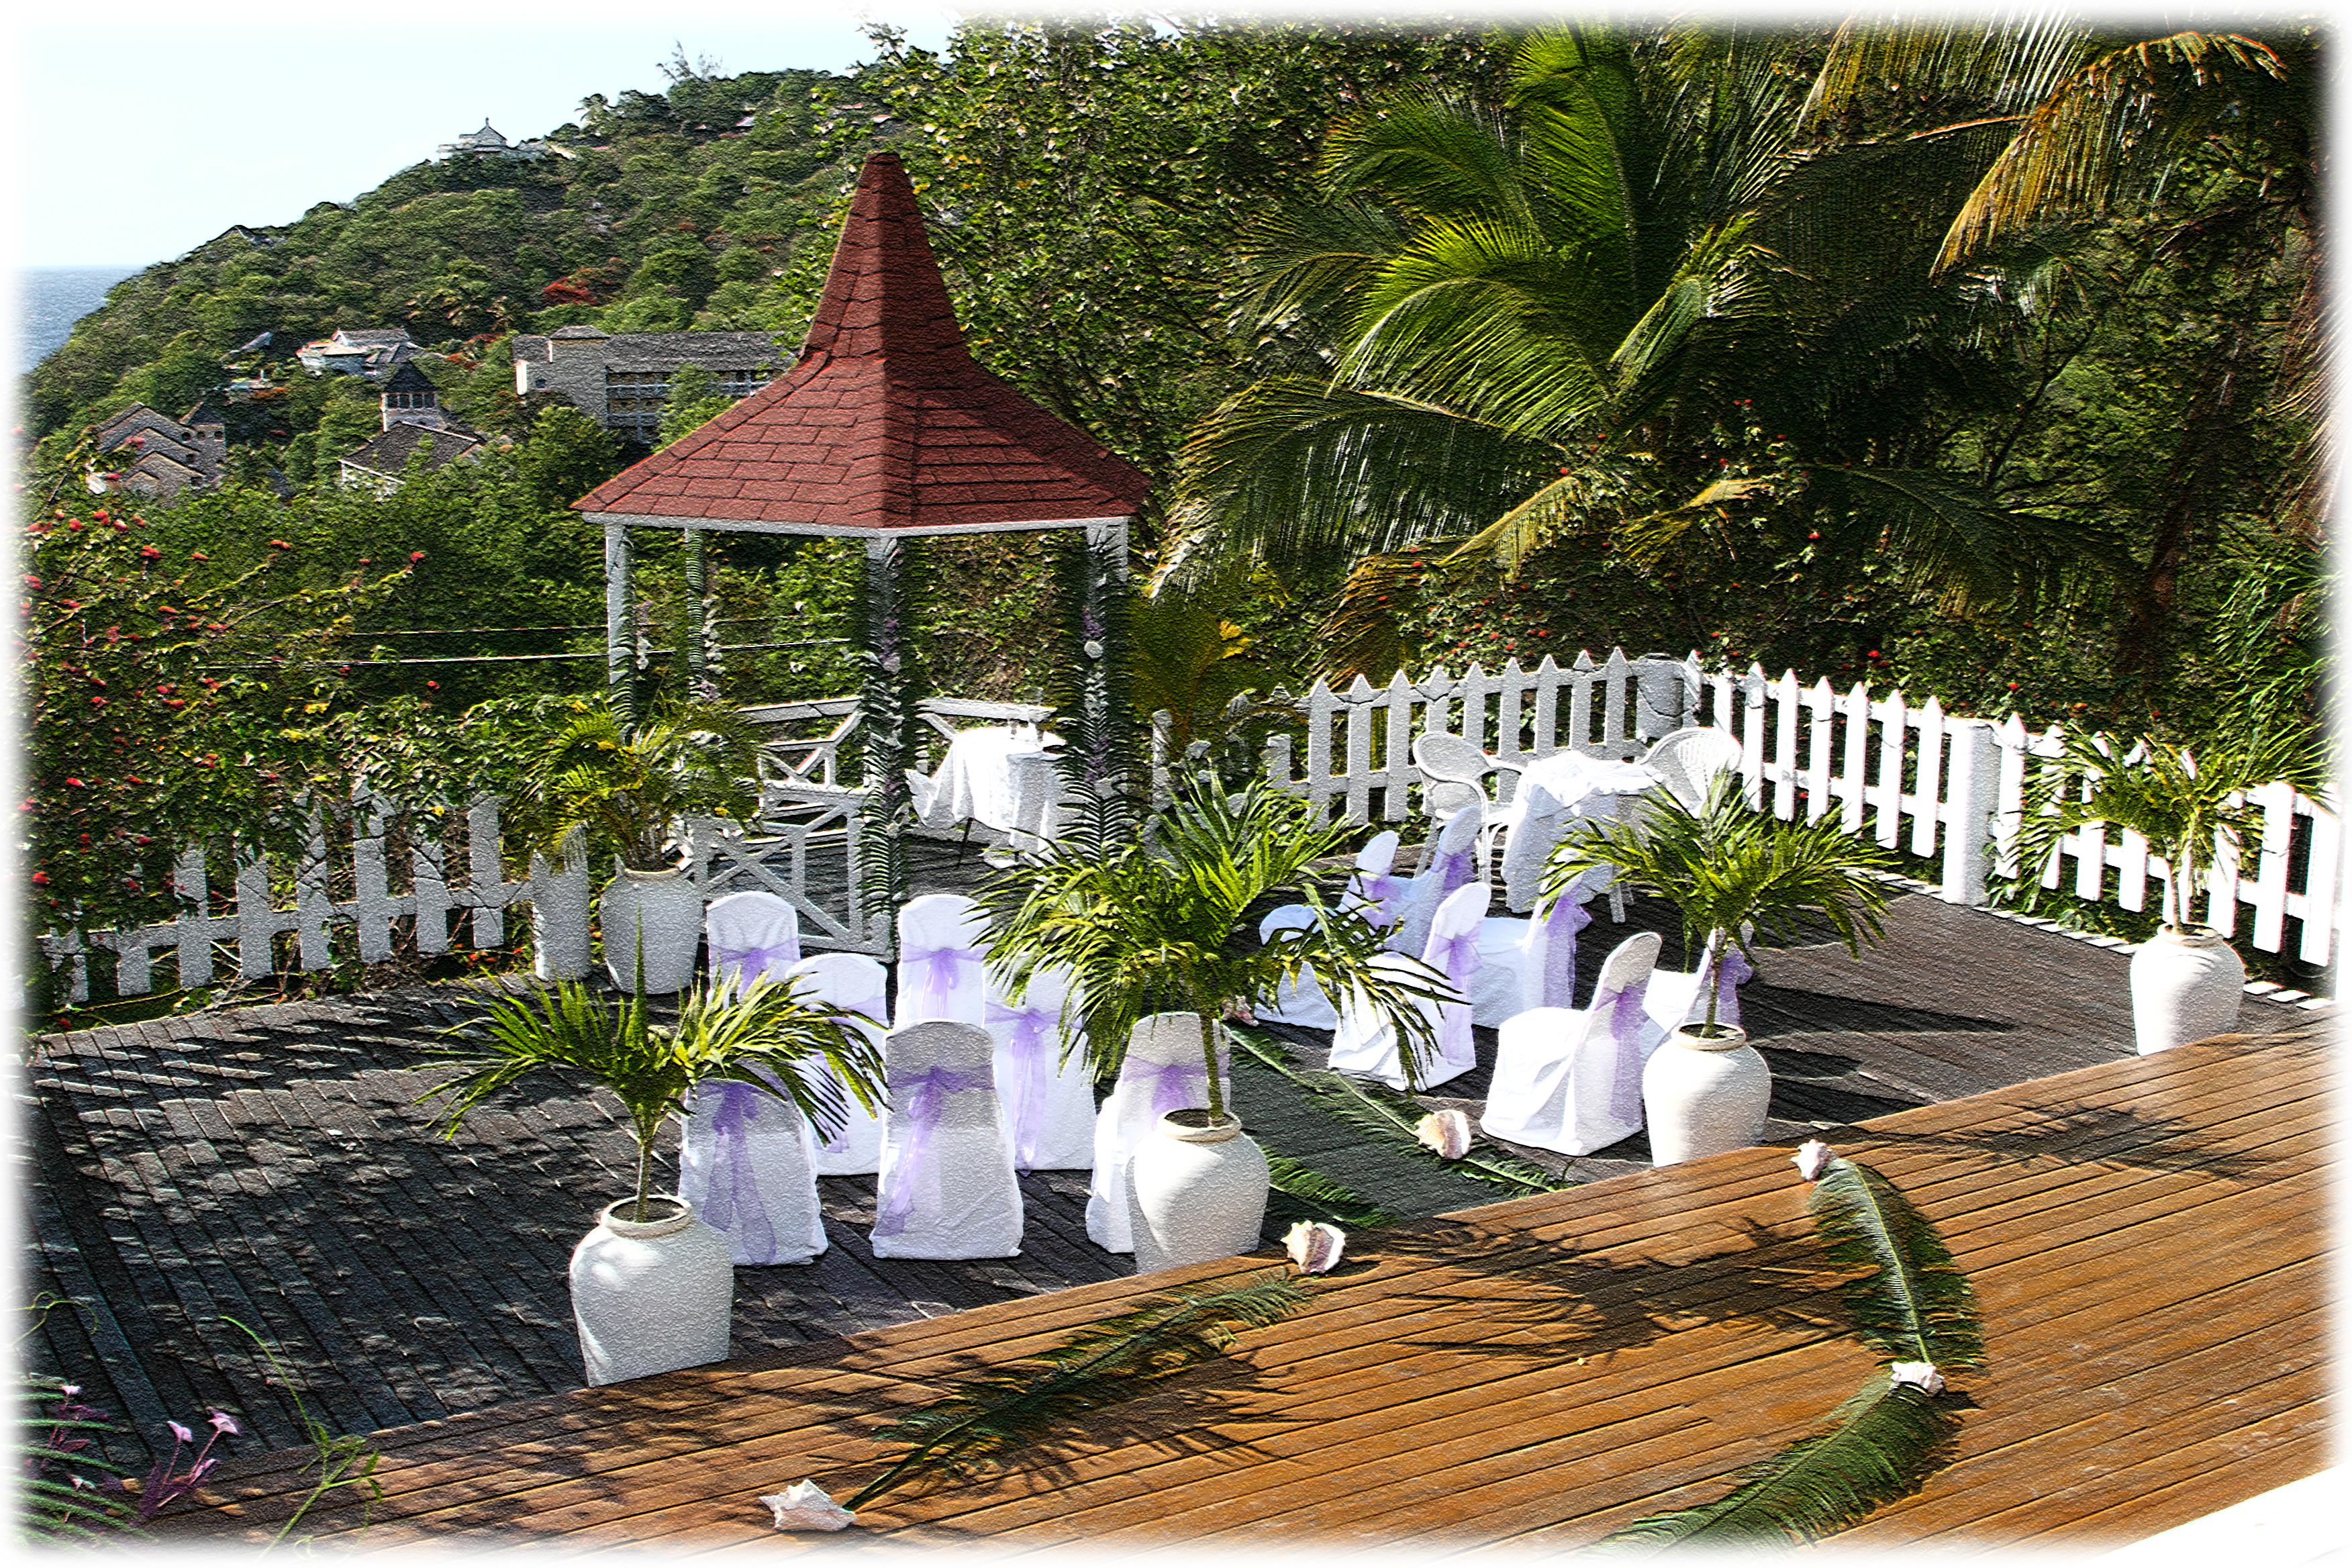 Full-service Villa Voor Gezinnen, Retraites, Groepen, Bruiloften; 4 Minuten Lopen Naar Het Strand - Saint Lucia